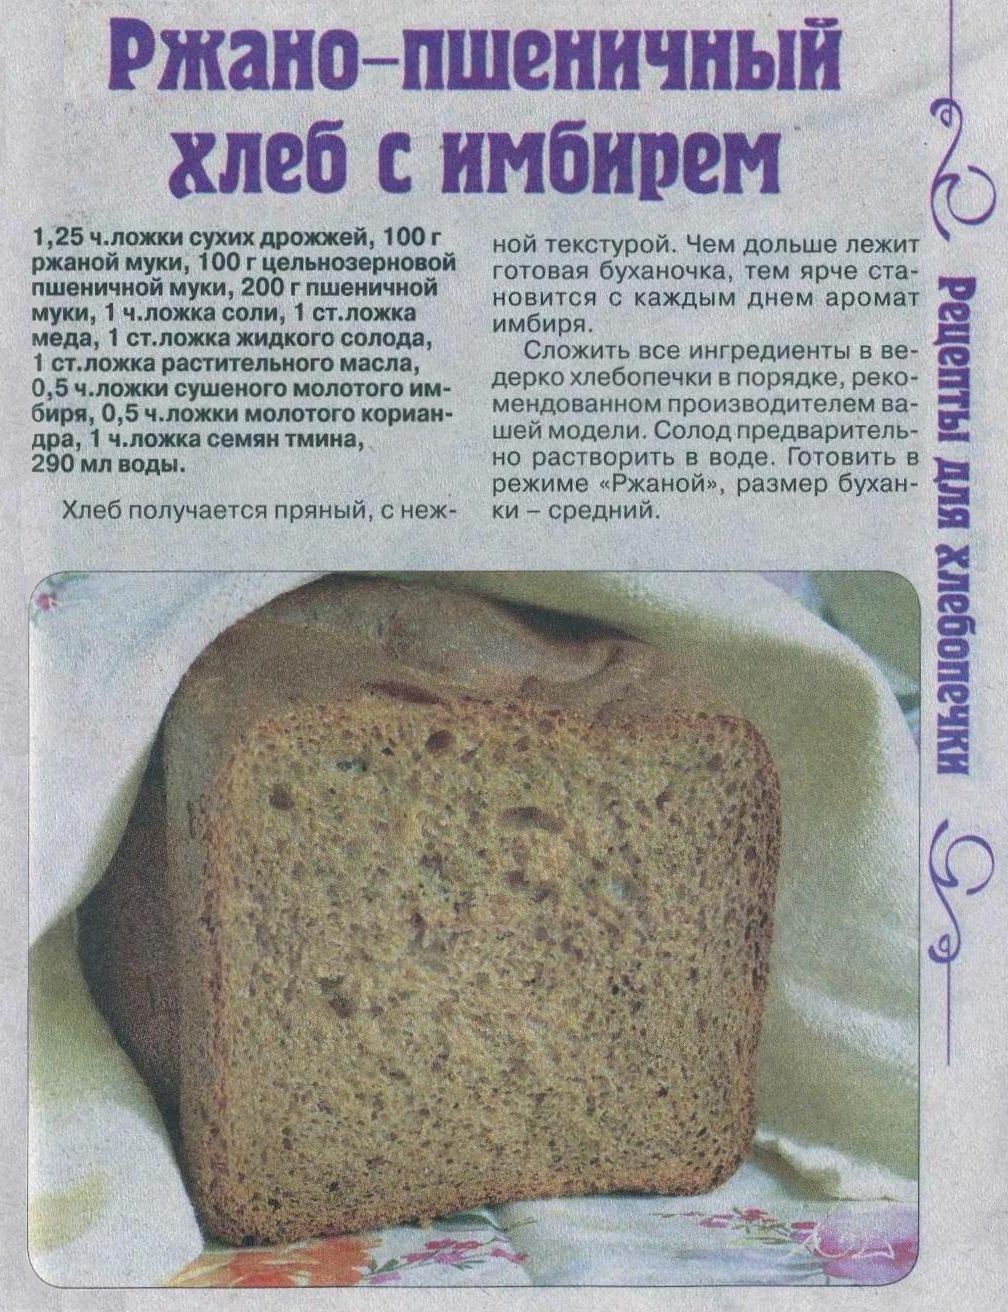 Постный хлеб в хлебопечке рецепты. Рецепт хлеба в хлебопечке. Тесто на хлеб в хлебопечке. Домашний хлеб в хлебопечке. Рецептура ржаного хлеба.